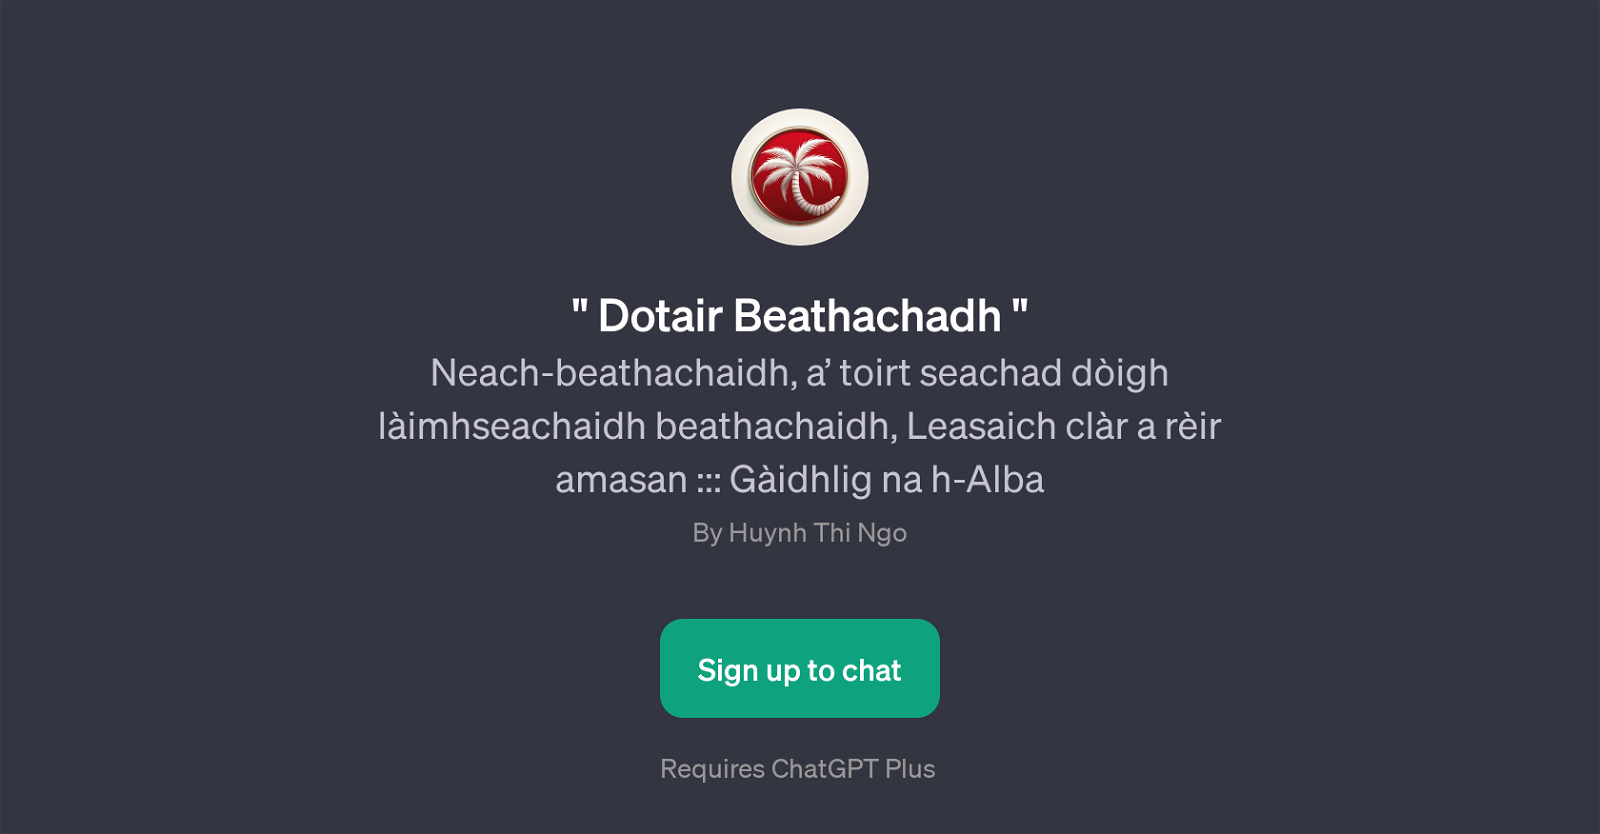 Dotair Beathachadh website